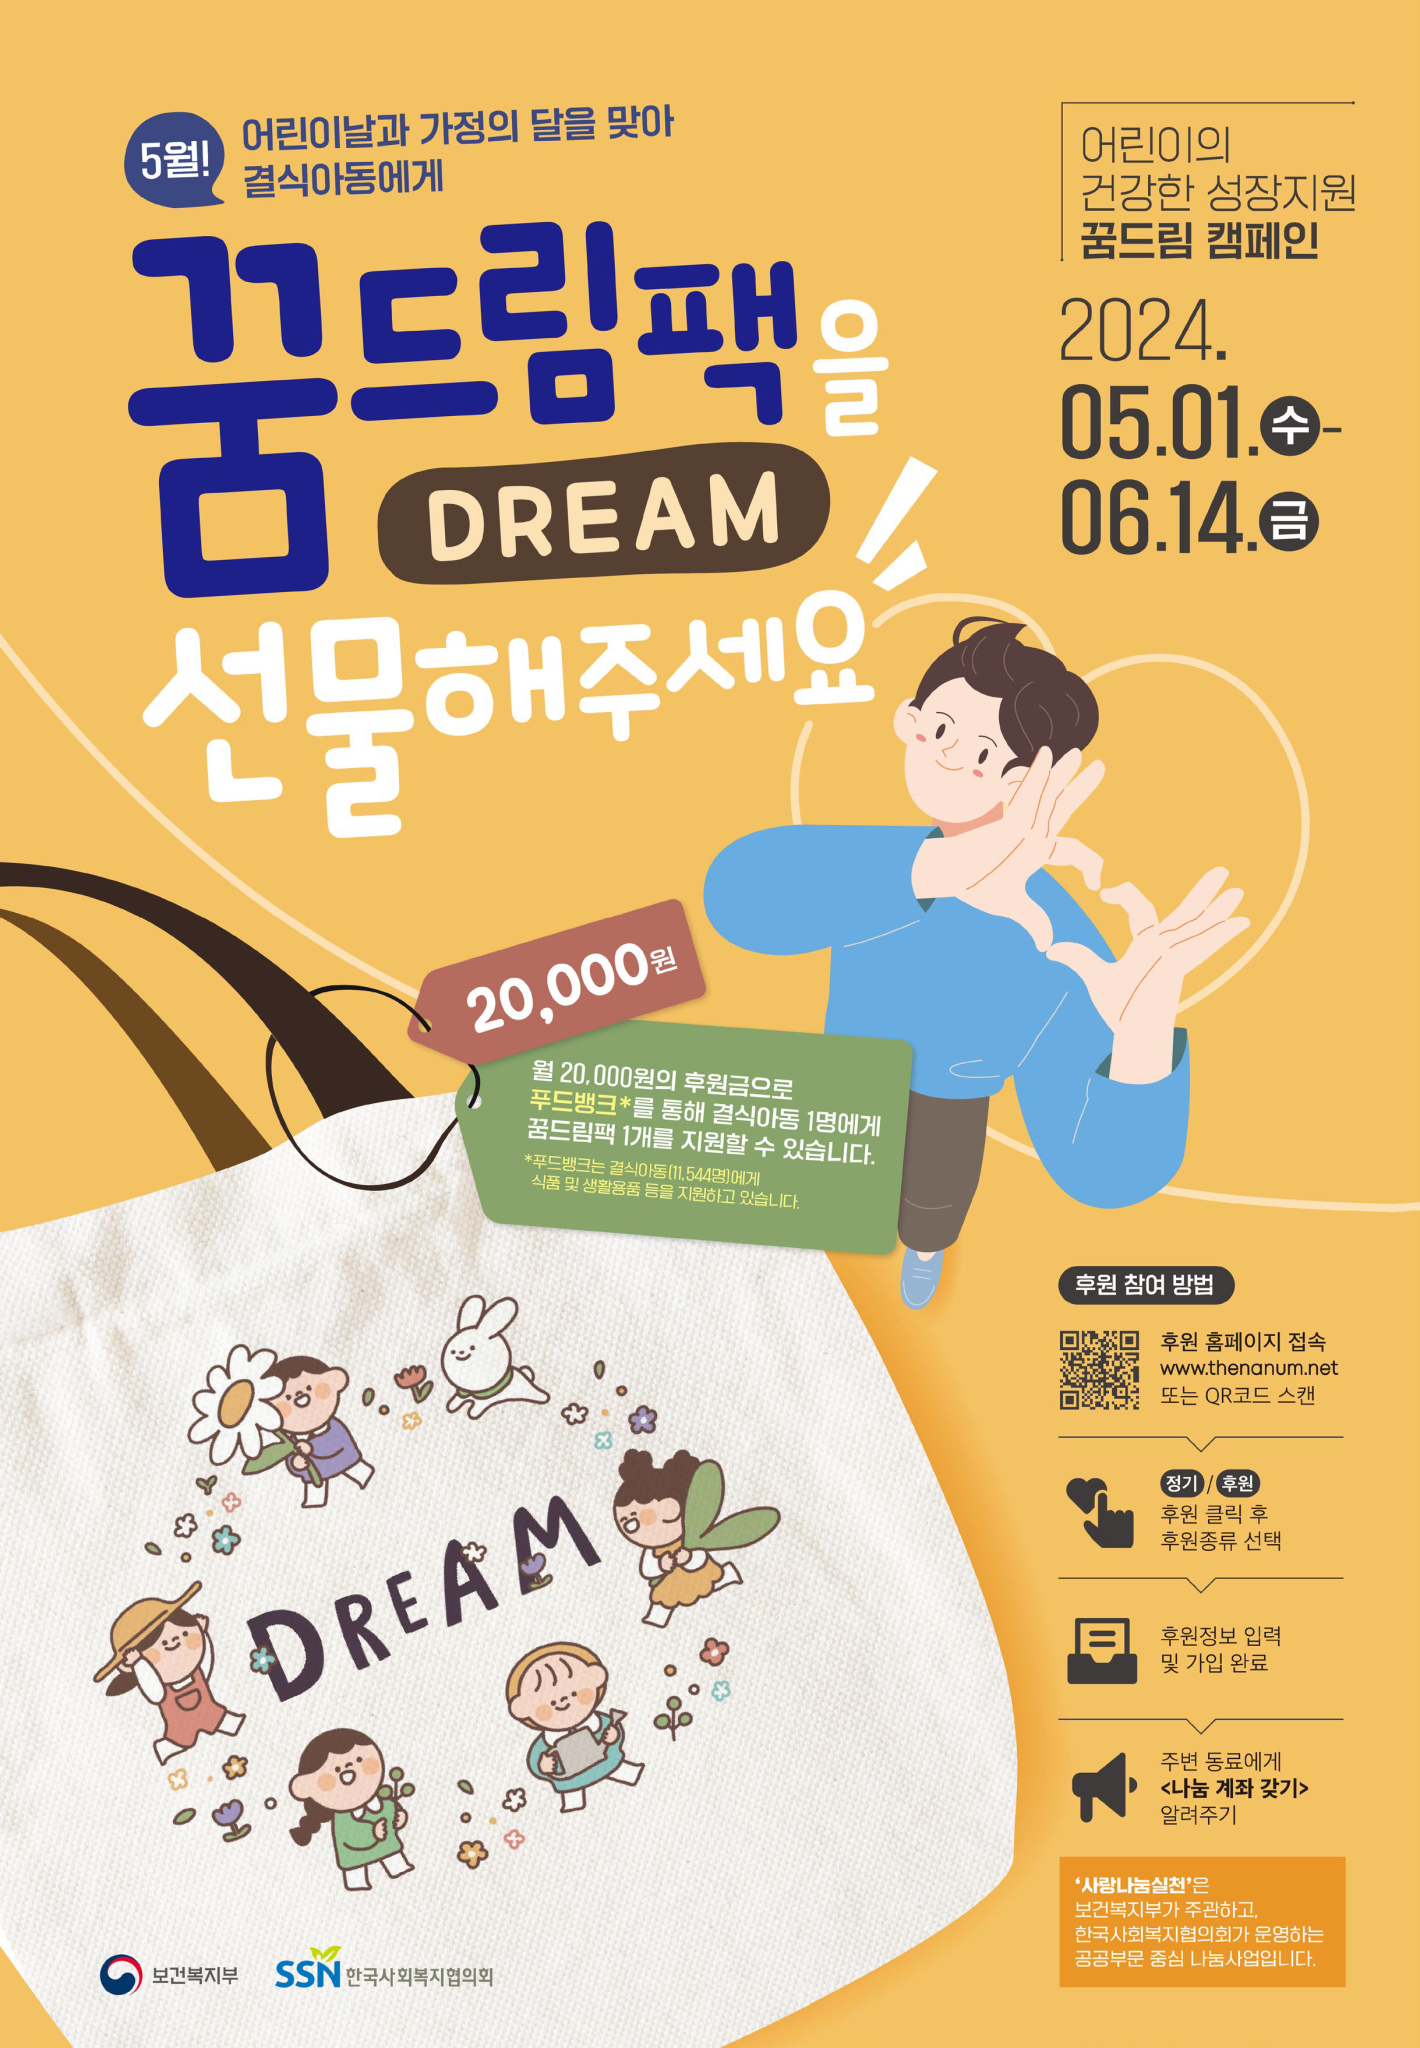 (붙임1) 꿈드림 캠페인 포스터